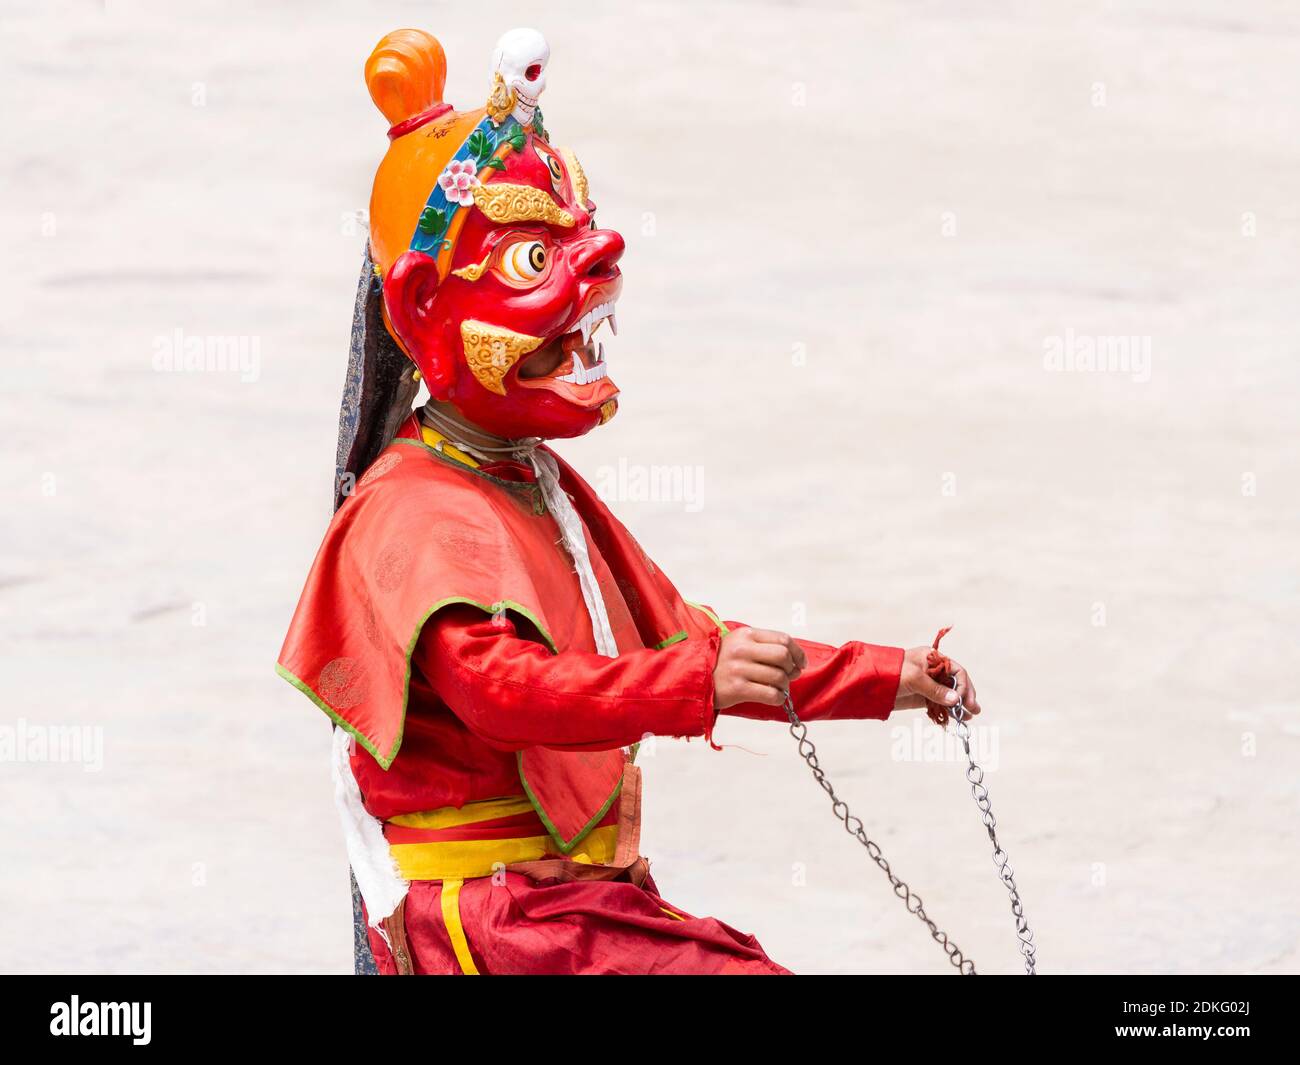 Monje no identificado realiza una danza religiosa enmascarada y disfrazada de misterio Del Budismo Tibetano durante el Cham Dance Festival en Hemis Monasterio en Hima Foto de stock